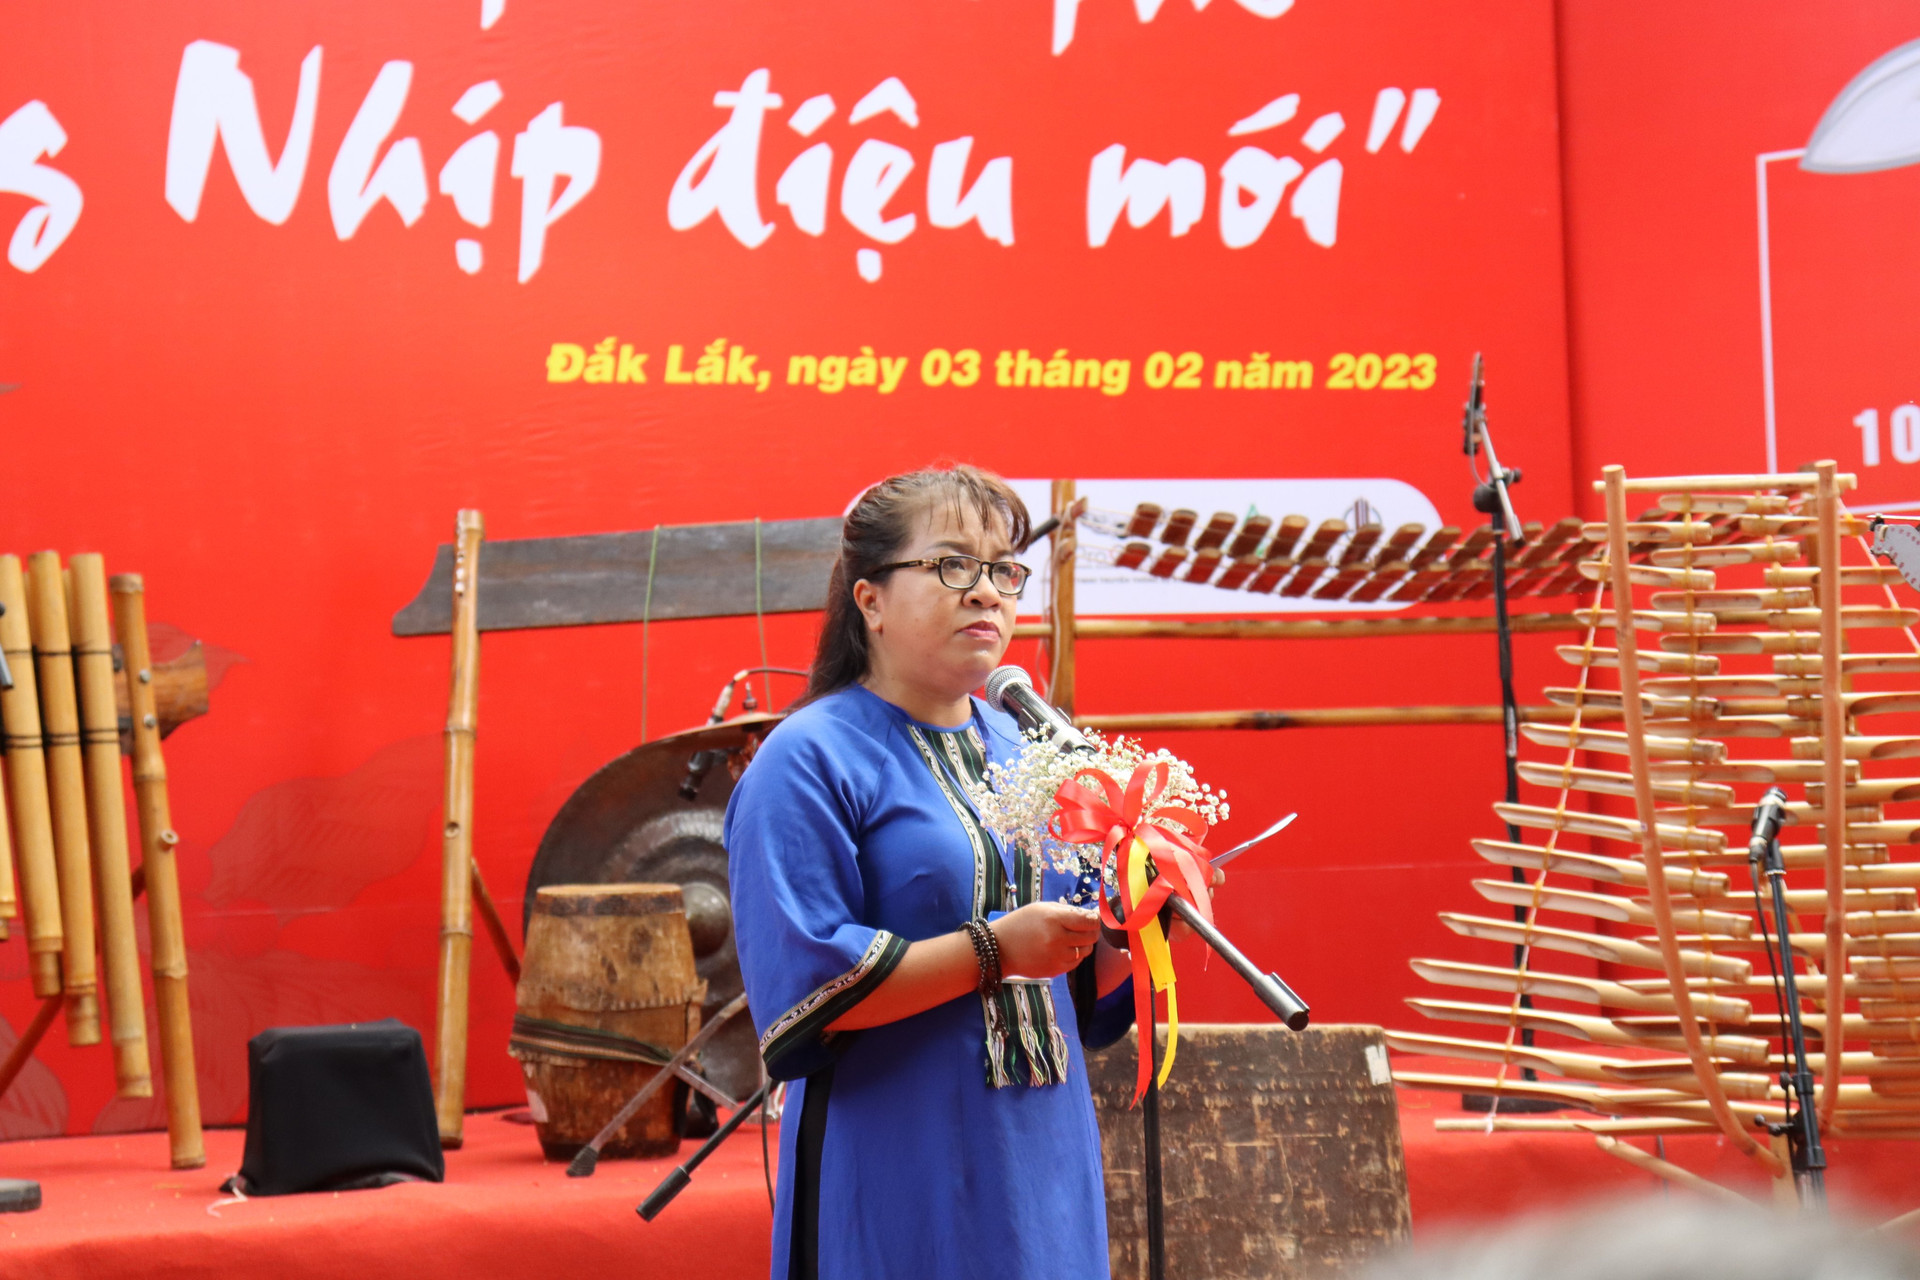 Nhà văn Niê Thanh Mai phát động cuộc thi sáng tác văn học 